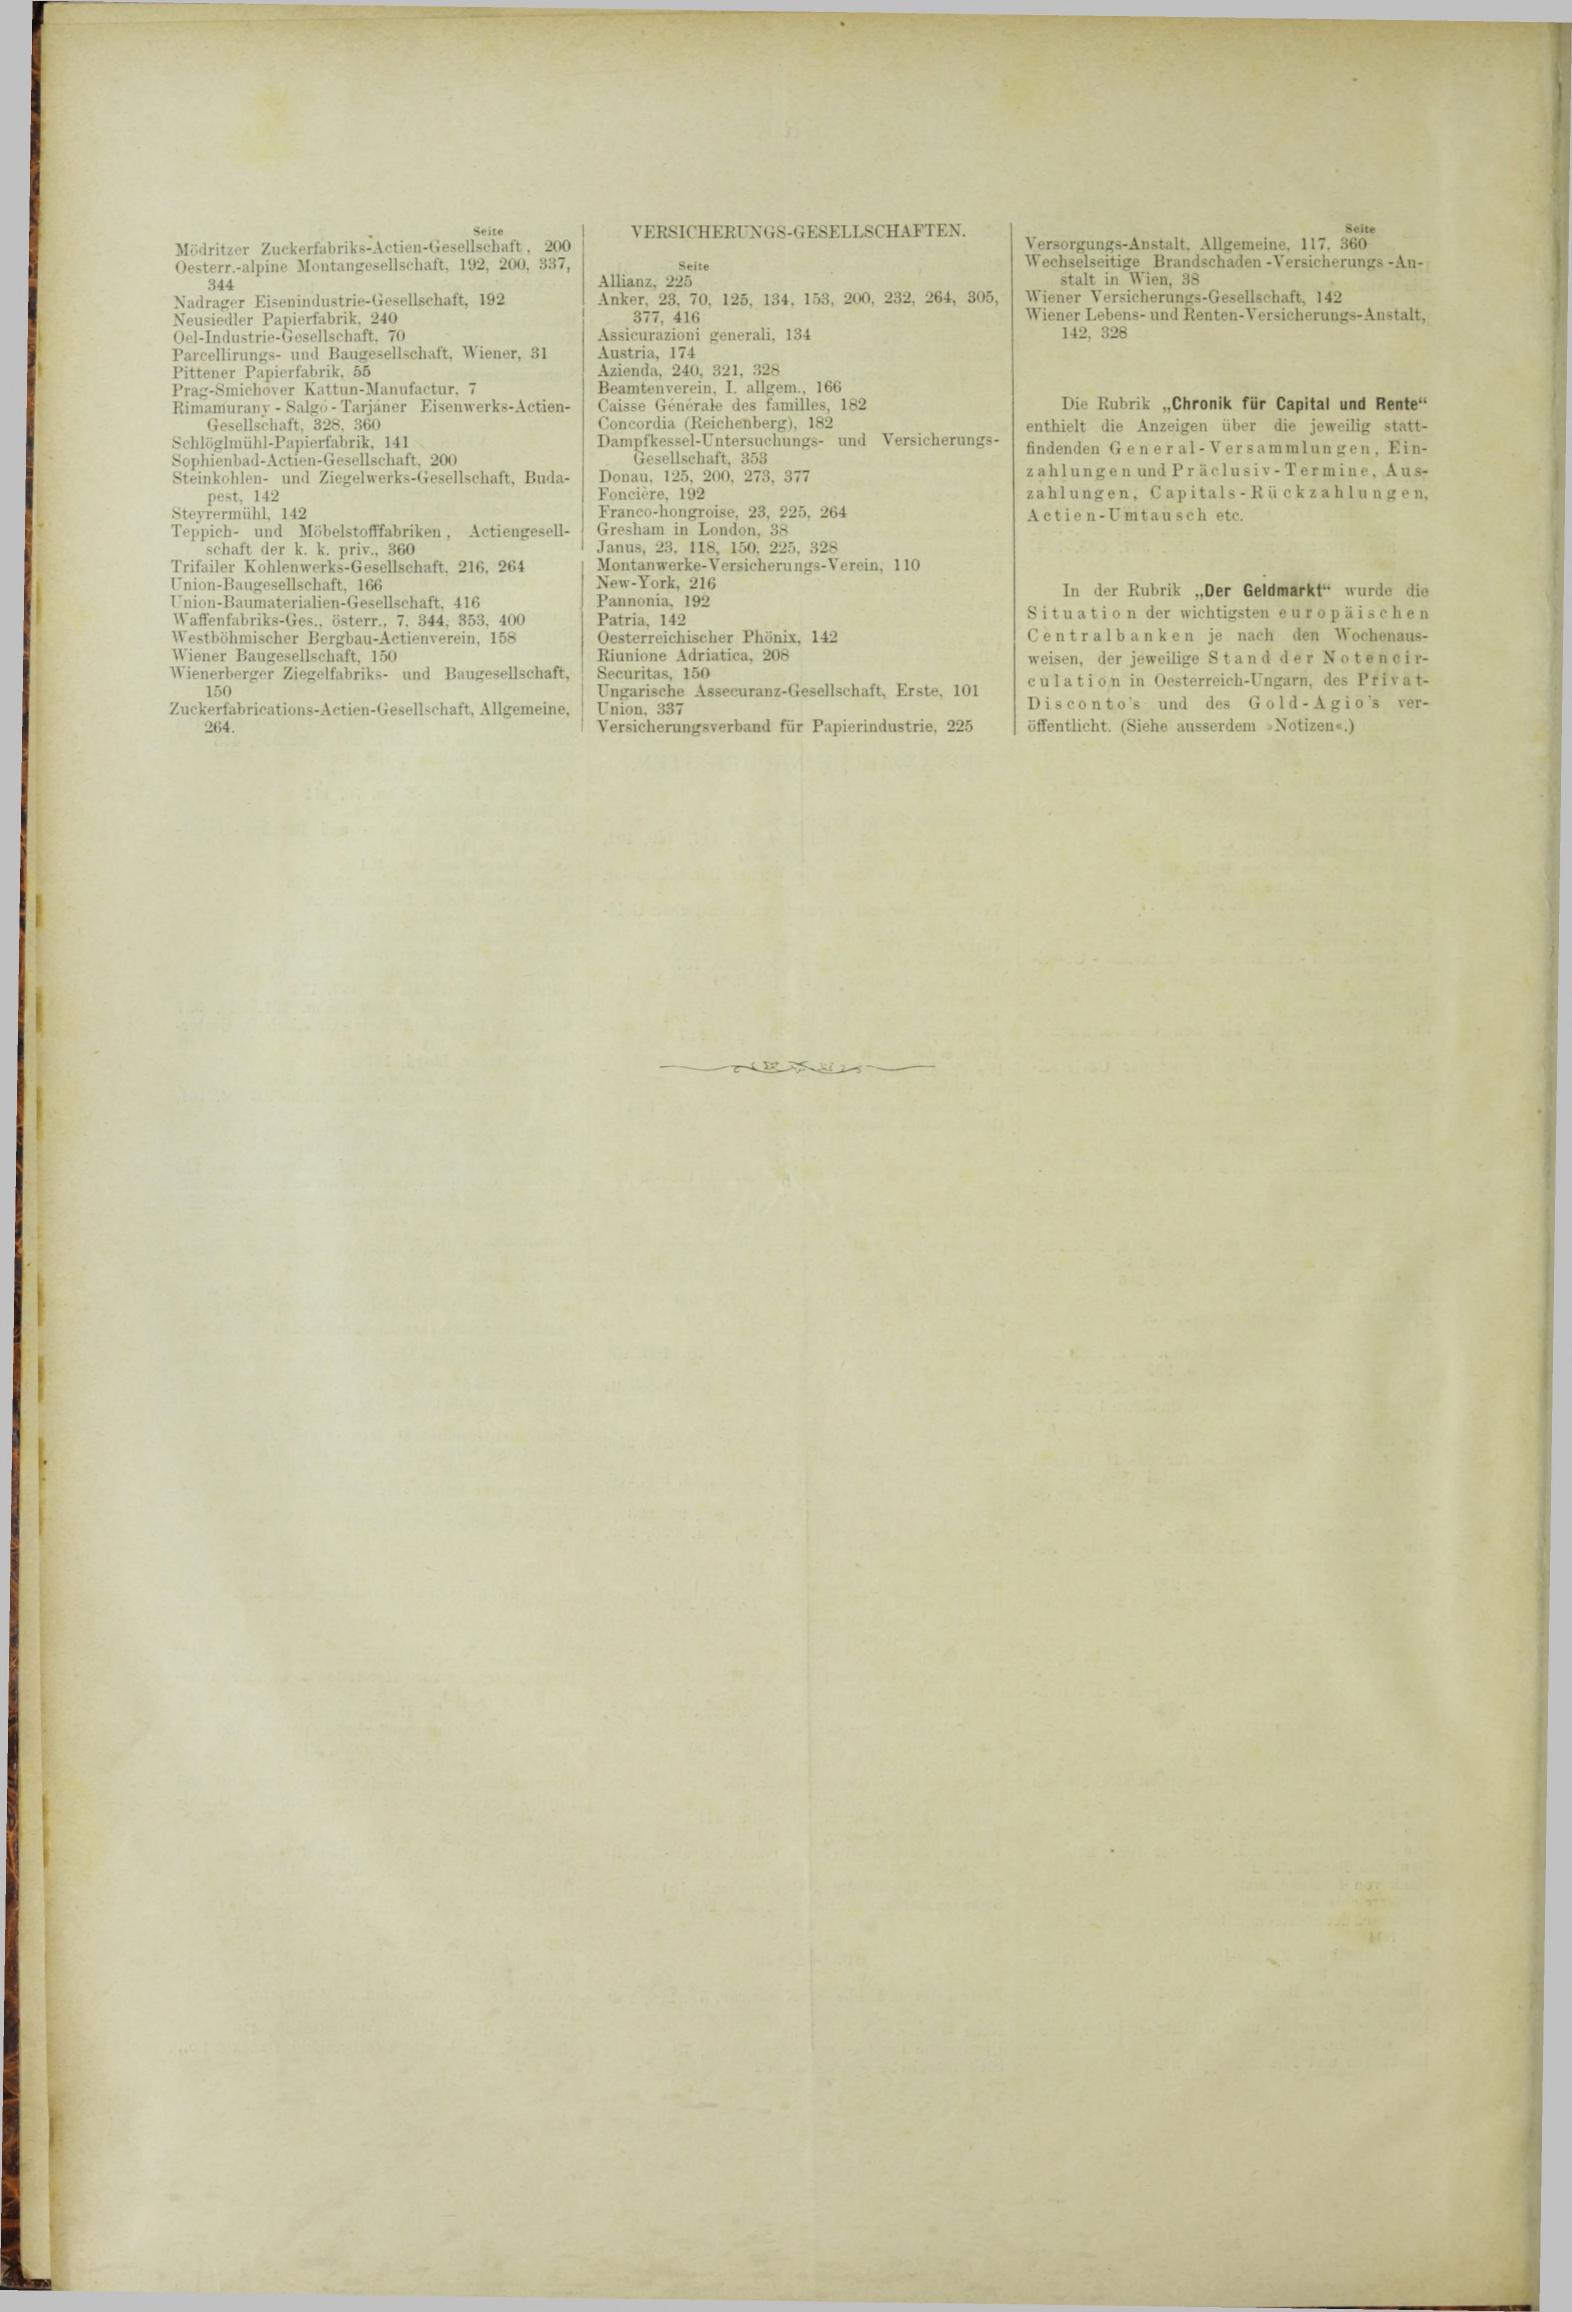 Der Tresor 24.05.1883 - Seite 12